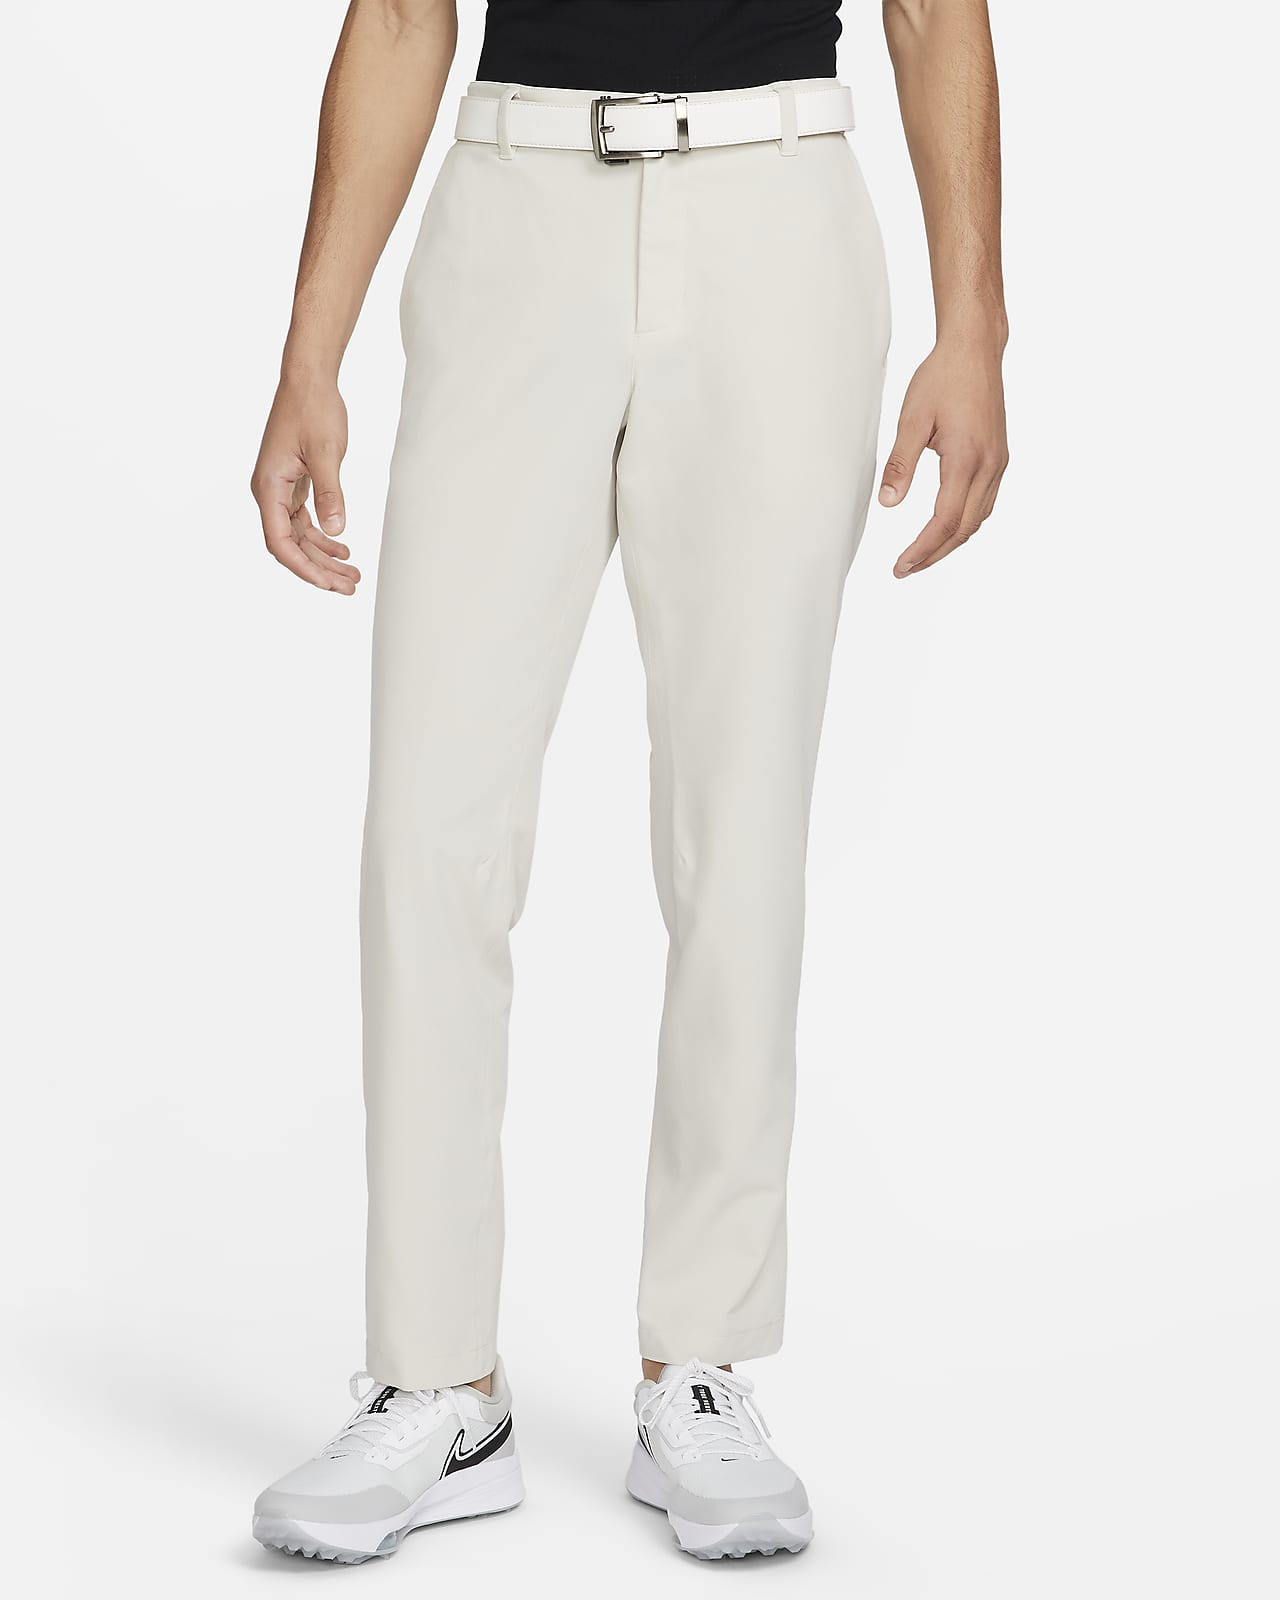 Ανδρικό παντελόνι γκολφ σε στενή γραμμή Nike Tour Repel Flex